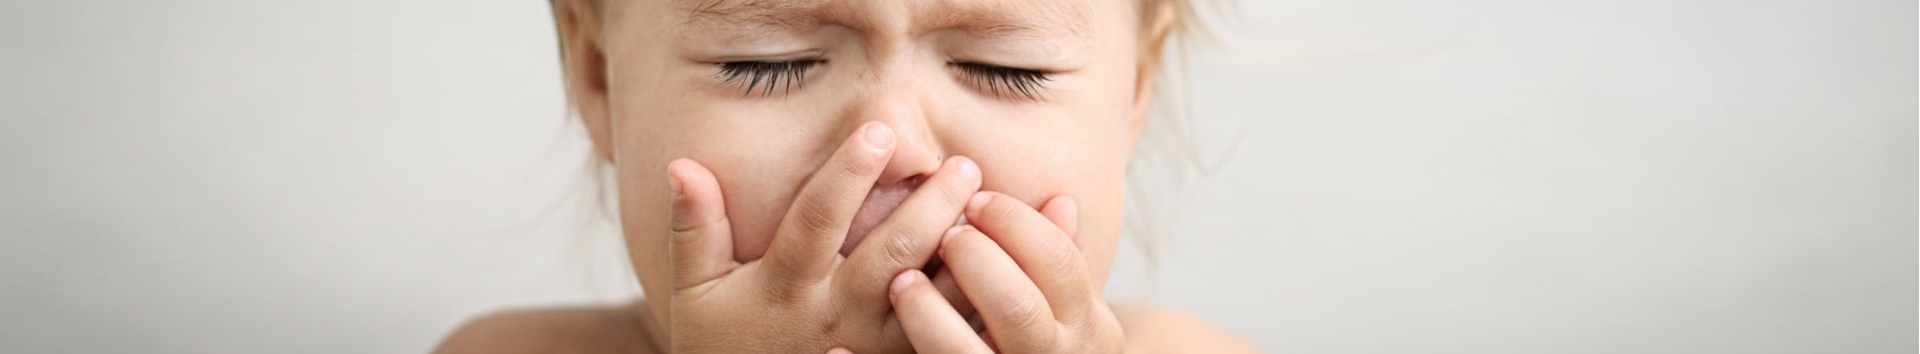 Tosse crônica em criança: O que é, Sinais, Causas e Precaução